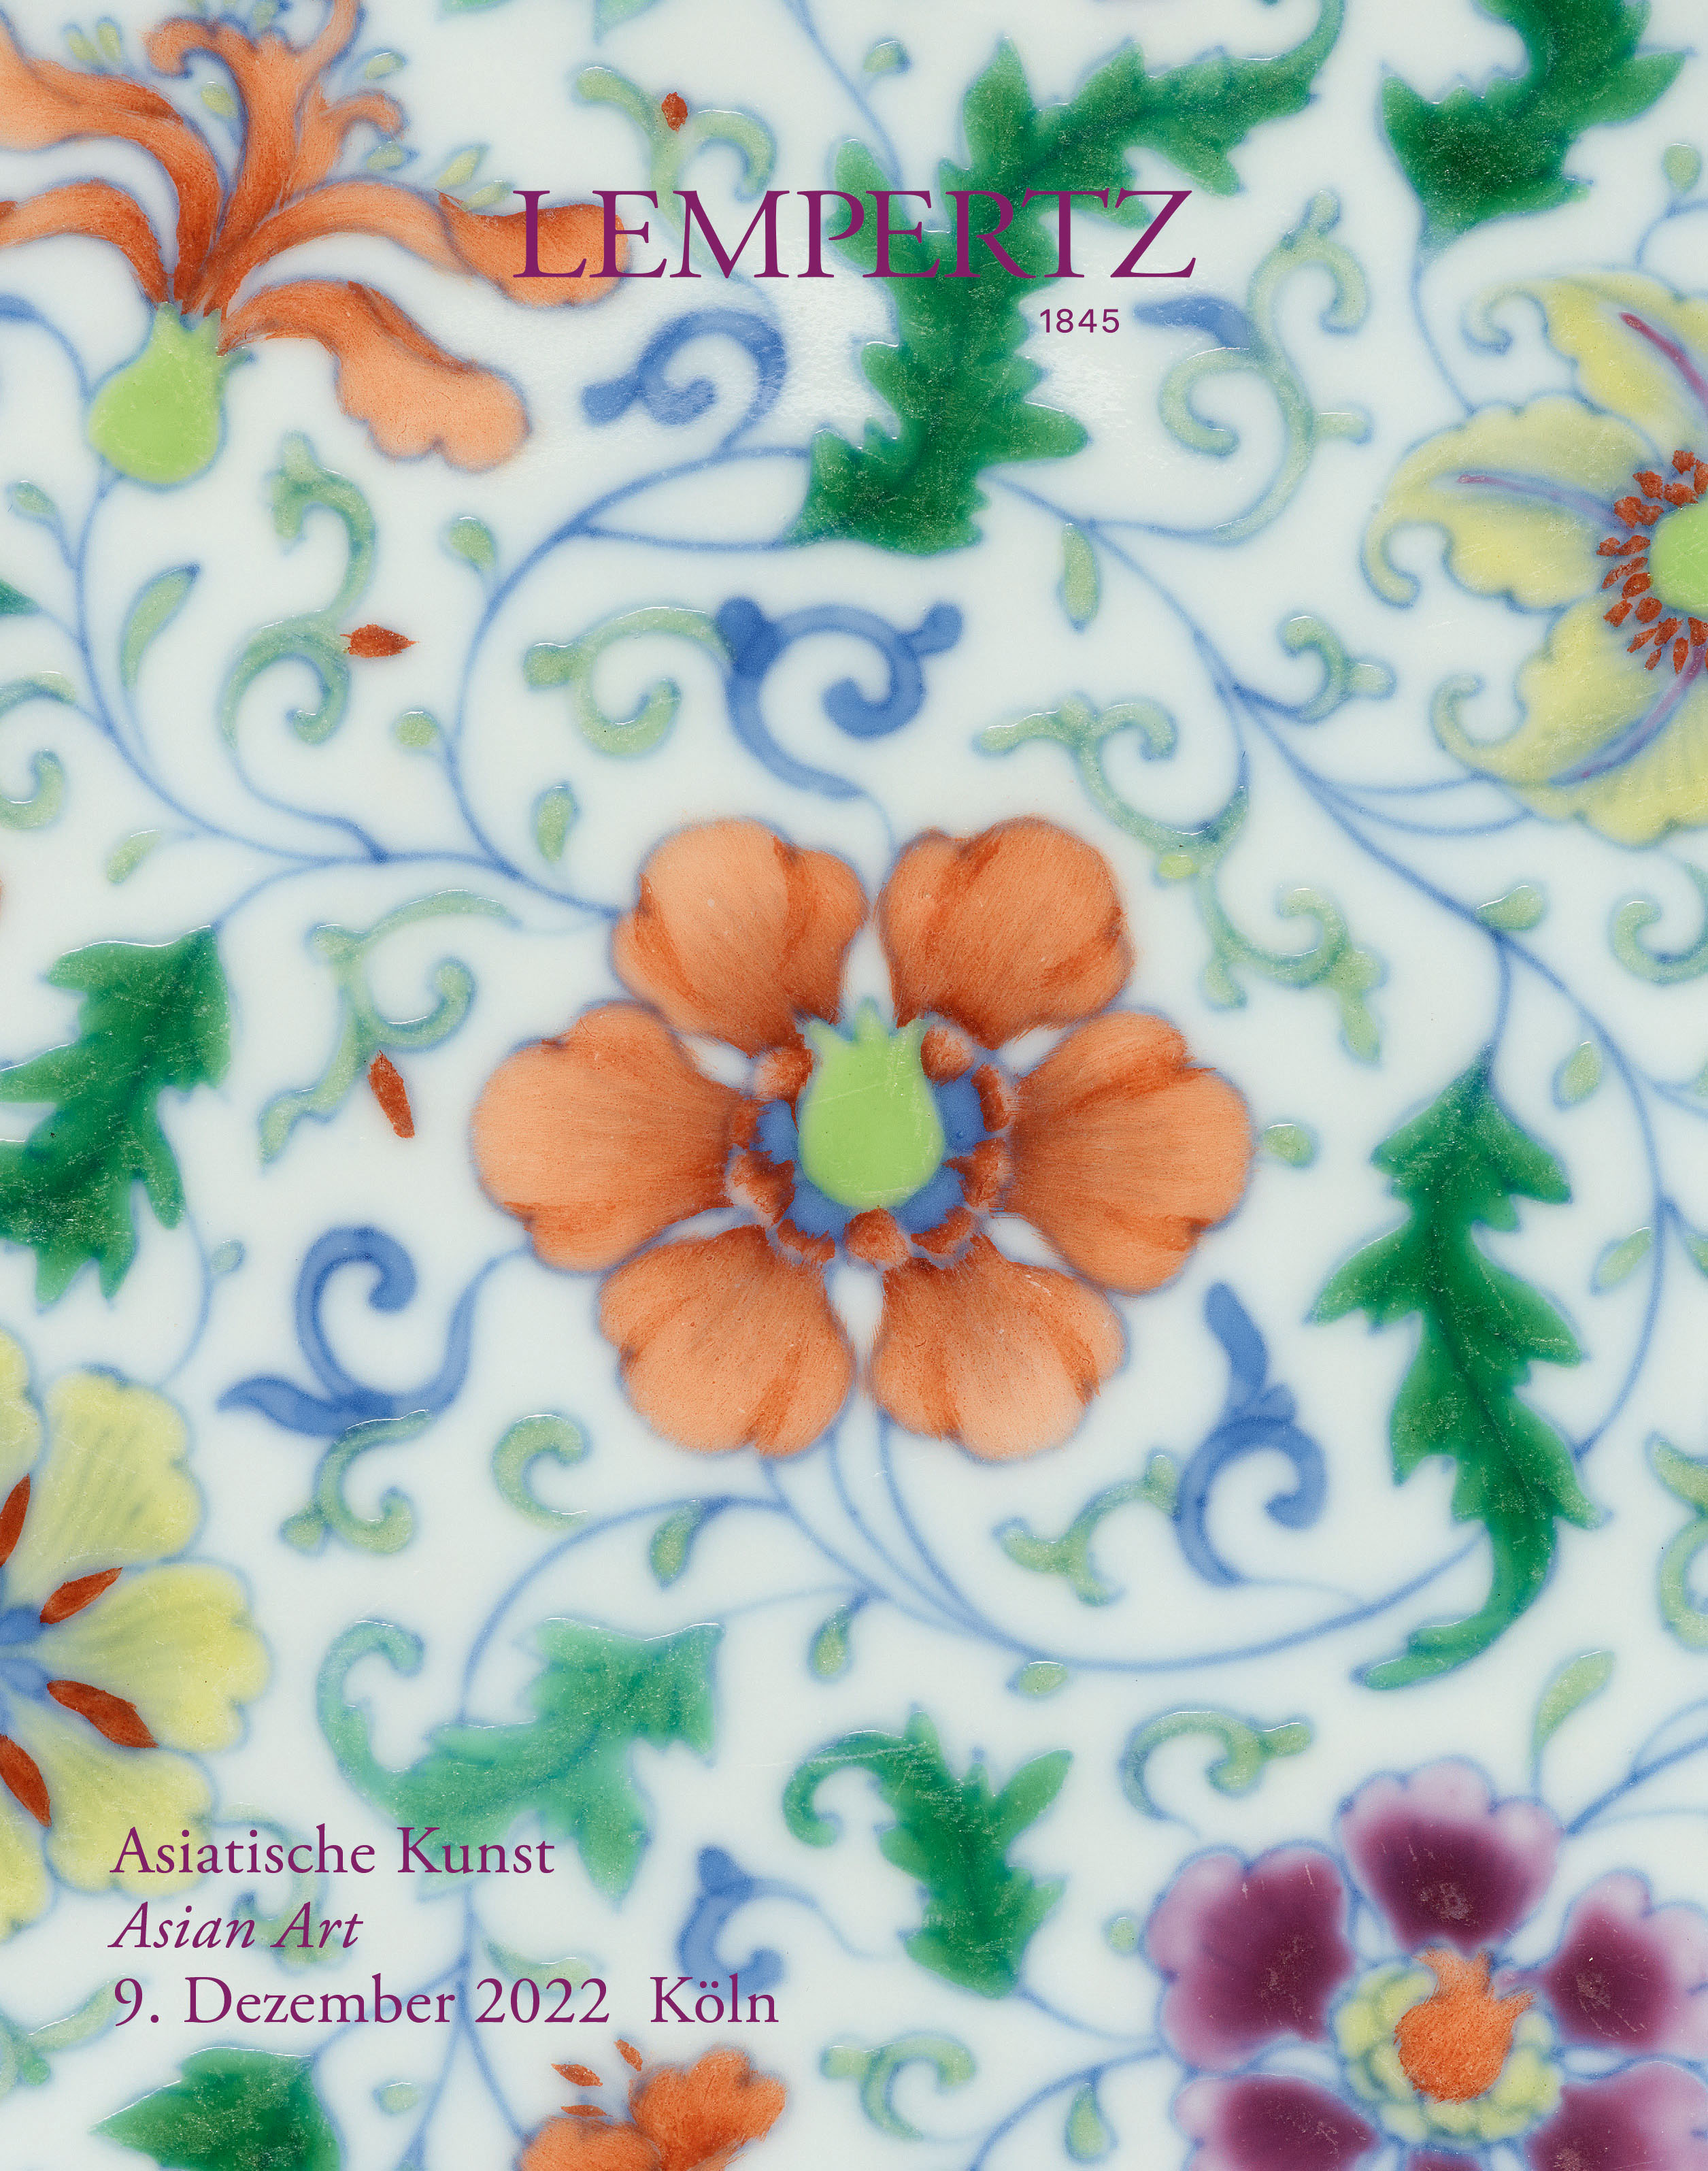 Auktionskatalog - Asiatische Kunst - Online Katalog - Auktion 1213 – Ersteigern Sie hochwertige Kunst in der nächsten Lempertz-Auktion!